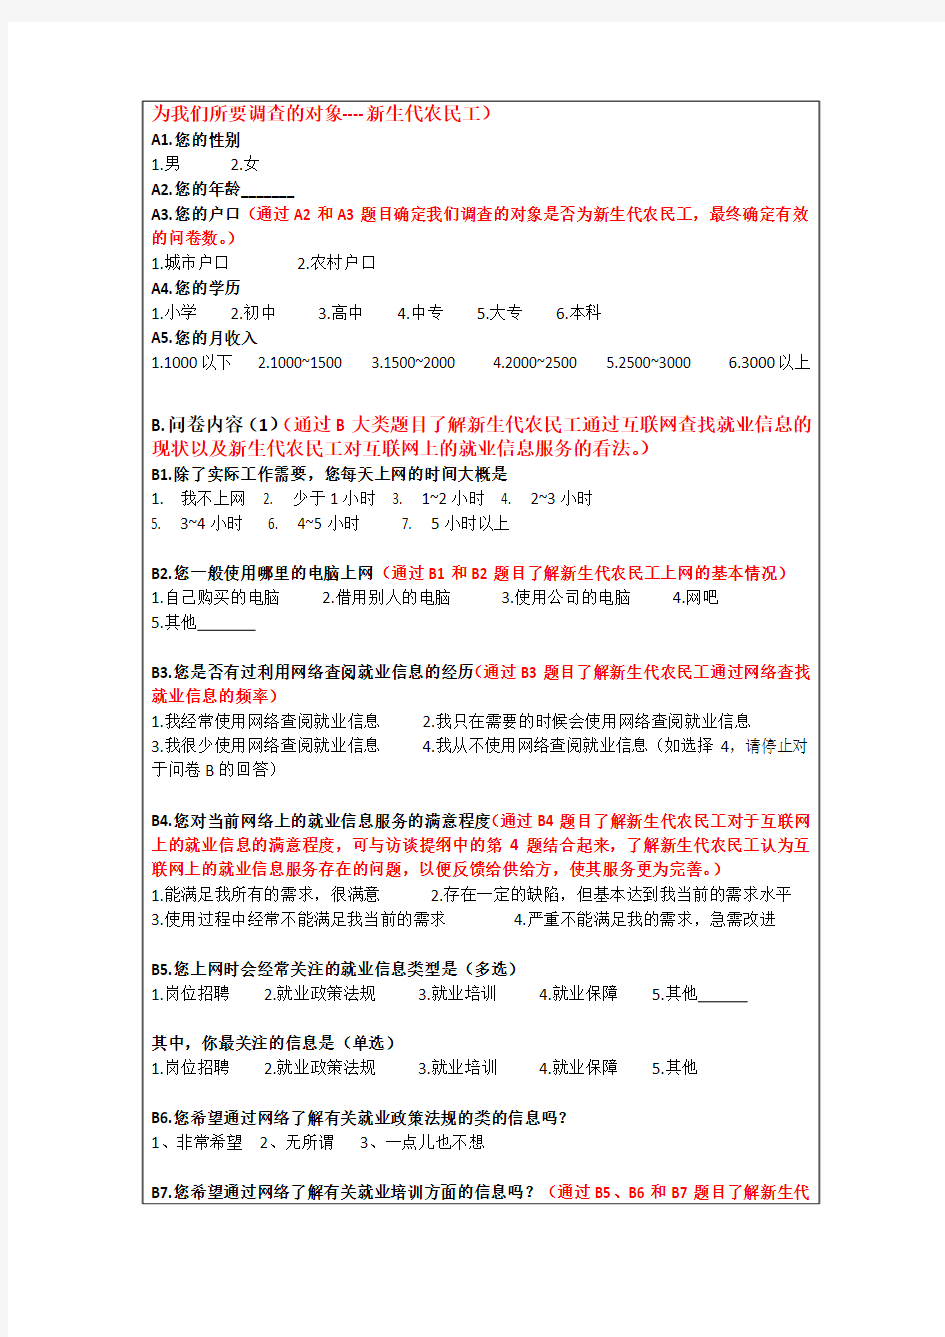 ‘薪火杯’中期报告——互联网环境下新生代农民工就业信息调查,以北京市为例